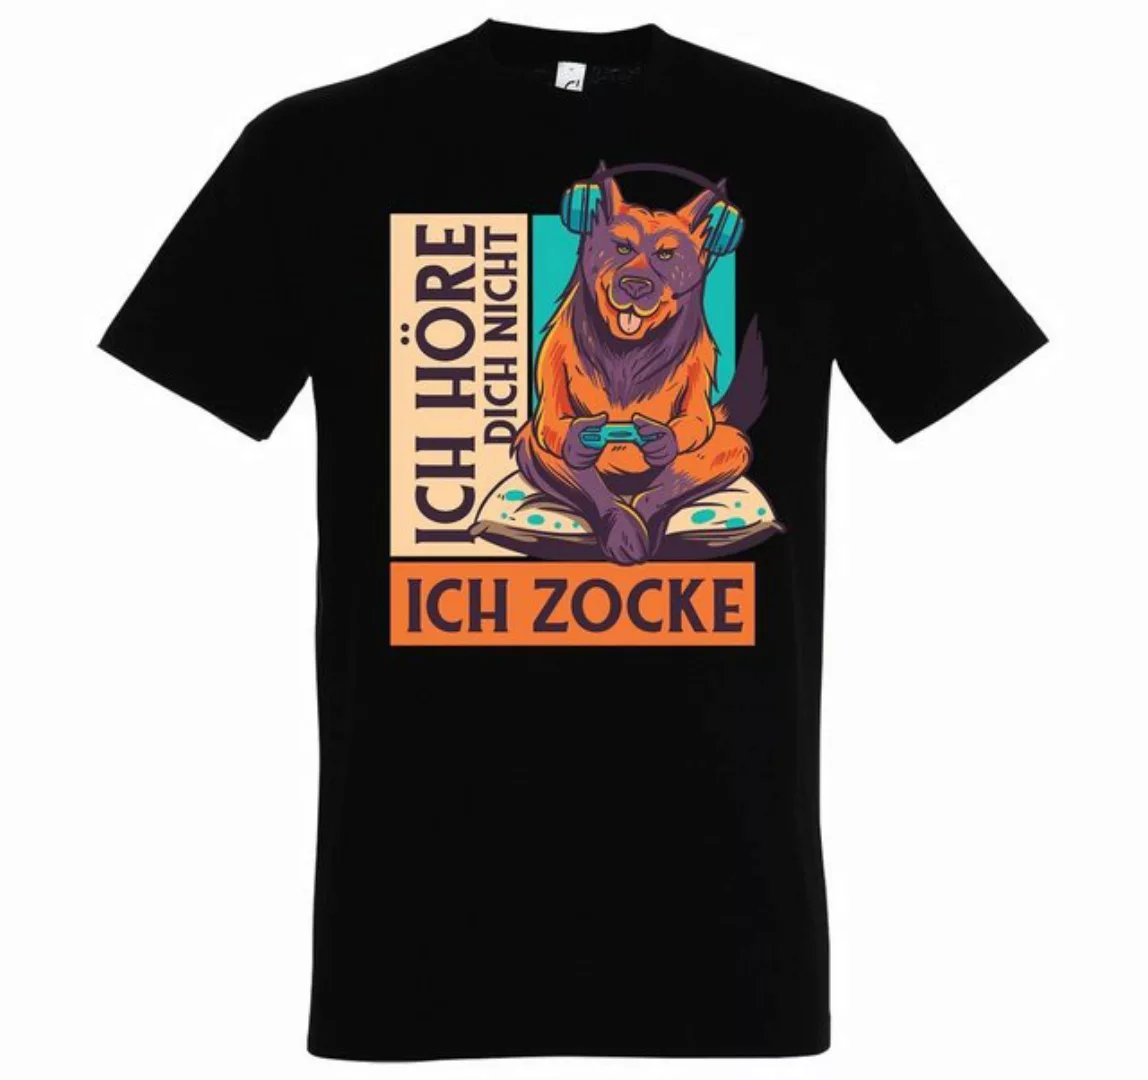 Youth Designz T-Shirt "Ich Höre Dich Nicht, Ich Zocke" Herren Shirt mit tre günstig online kaufen